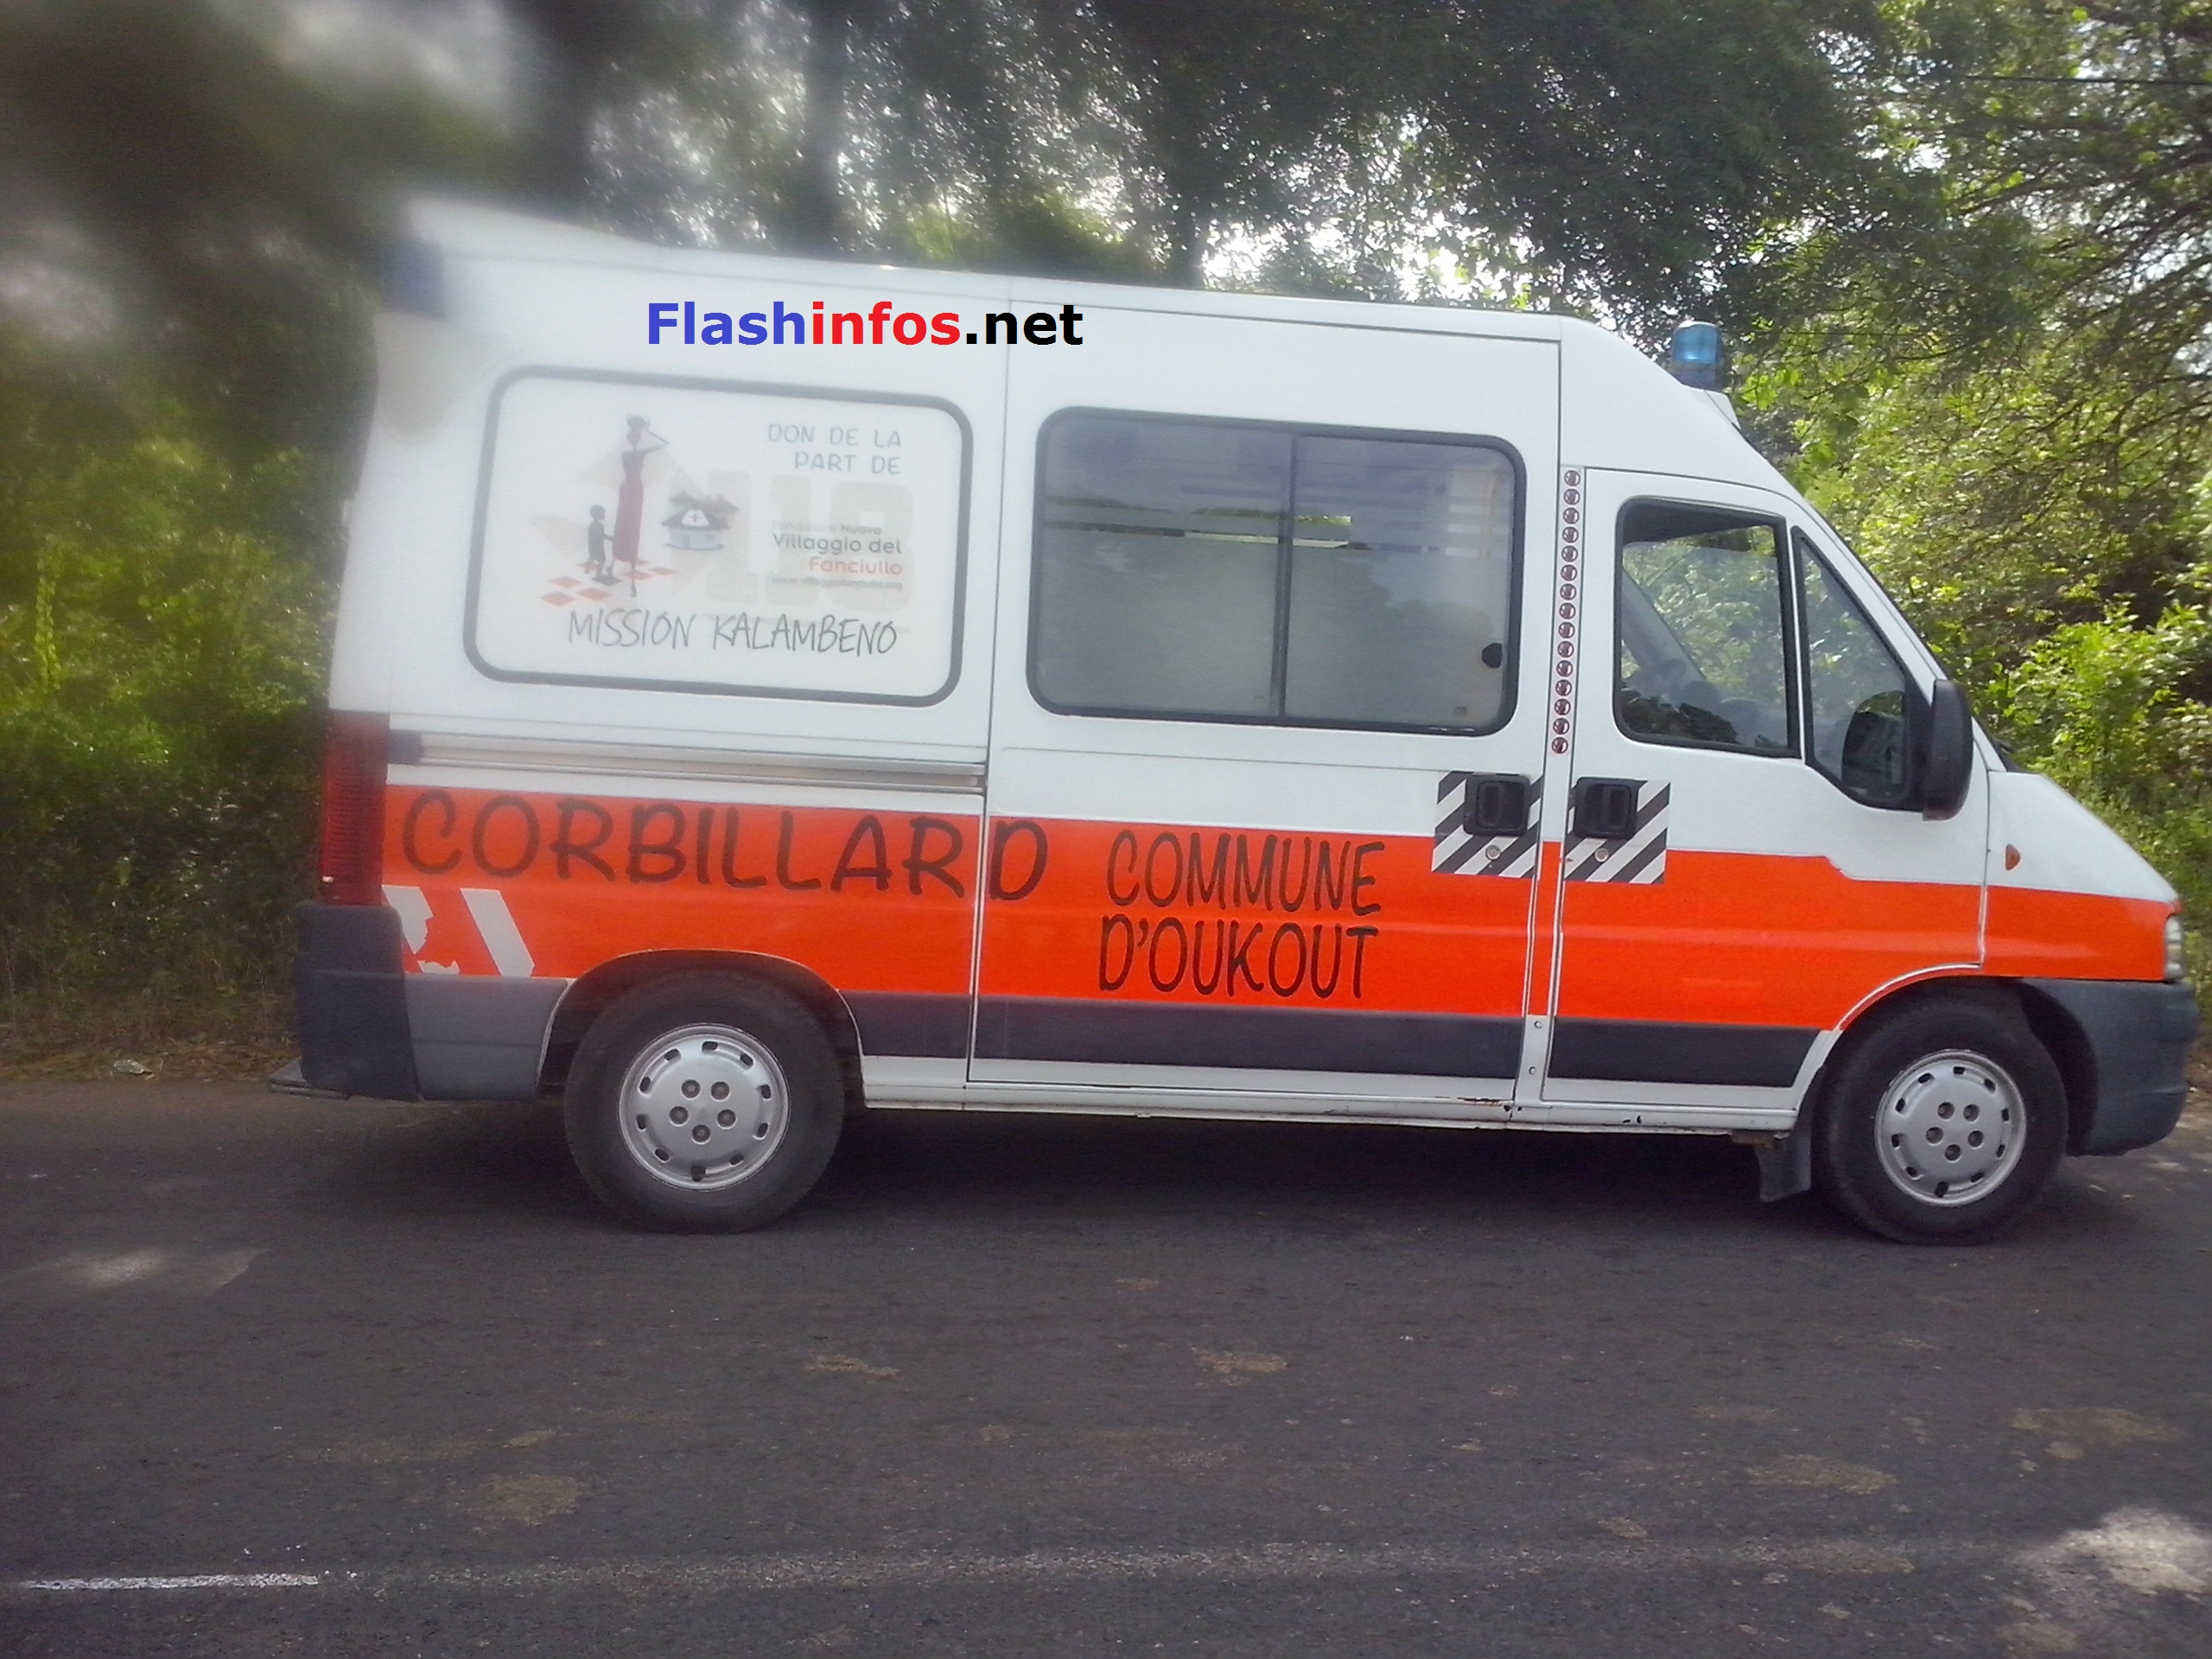 OUSSOUYE : La commune d’Oukout étrenne deux ambulances et un corbillard